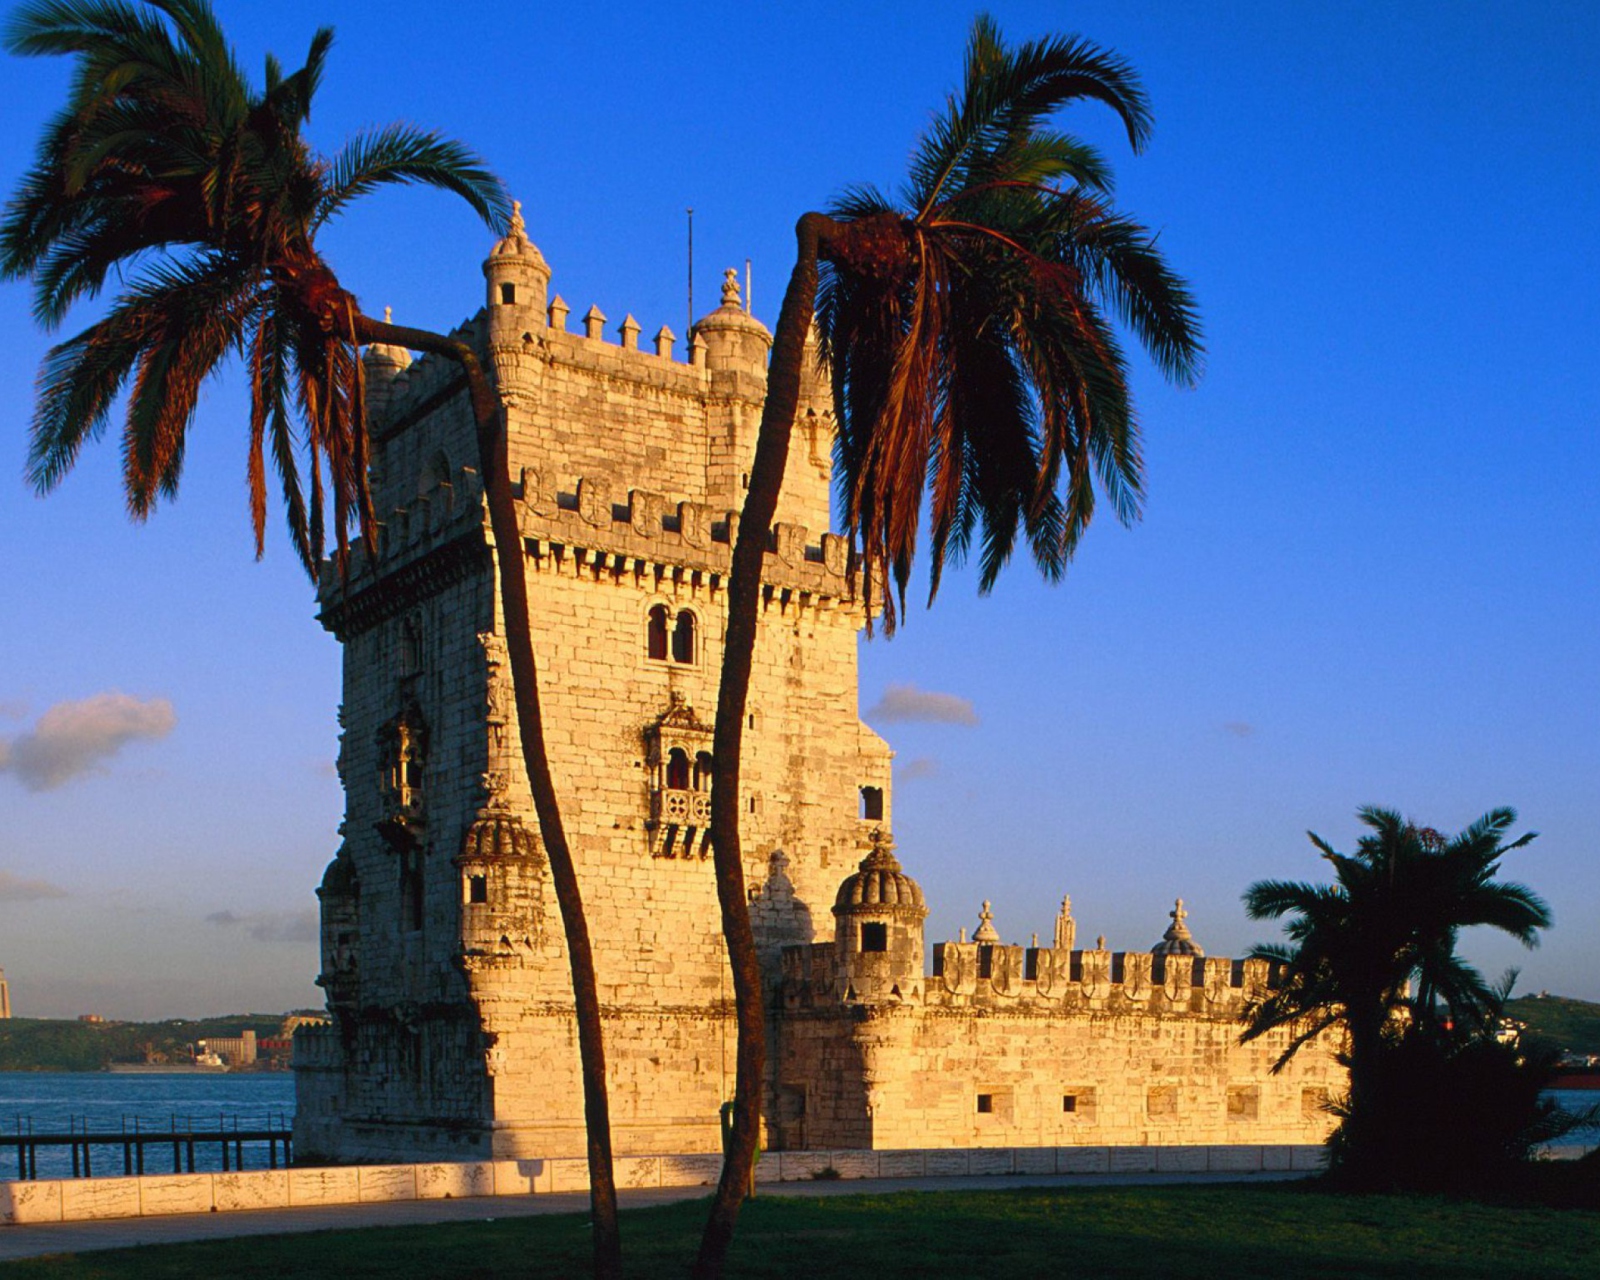 Das Belem Tower Portugal Wallpaper 1600x1280